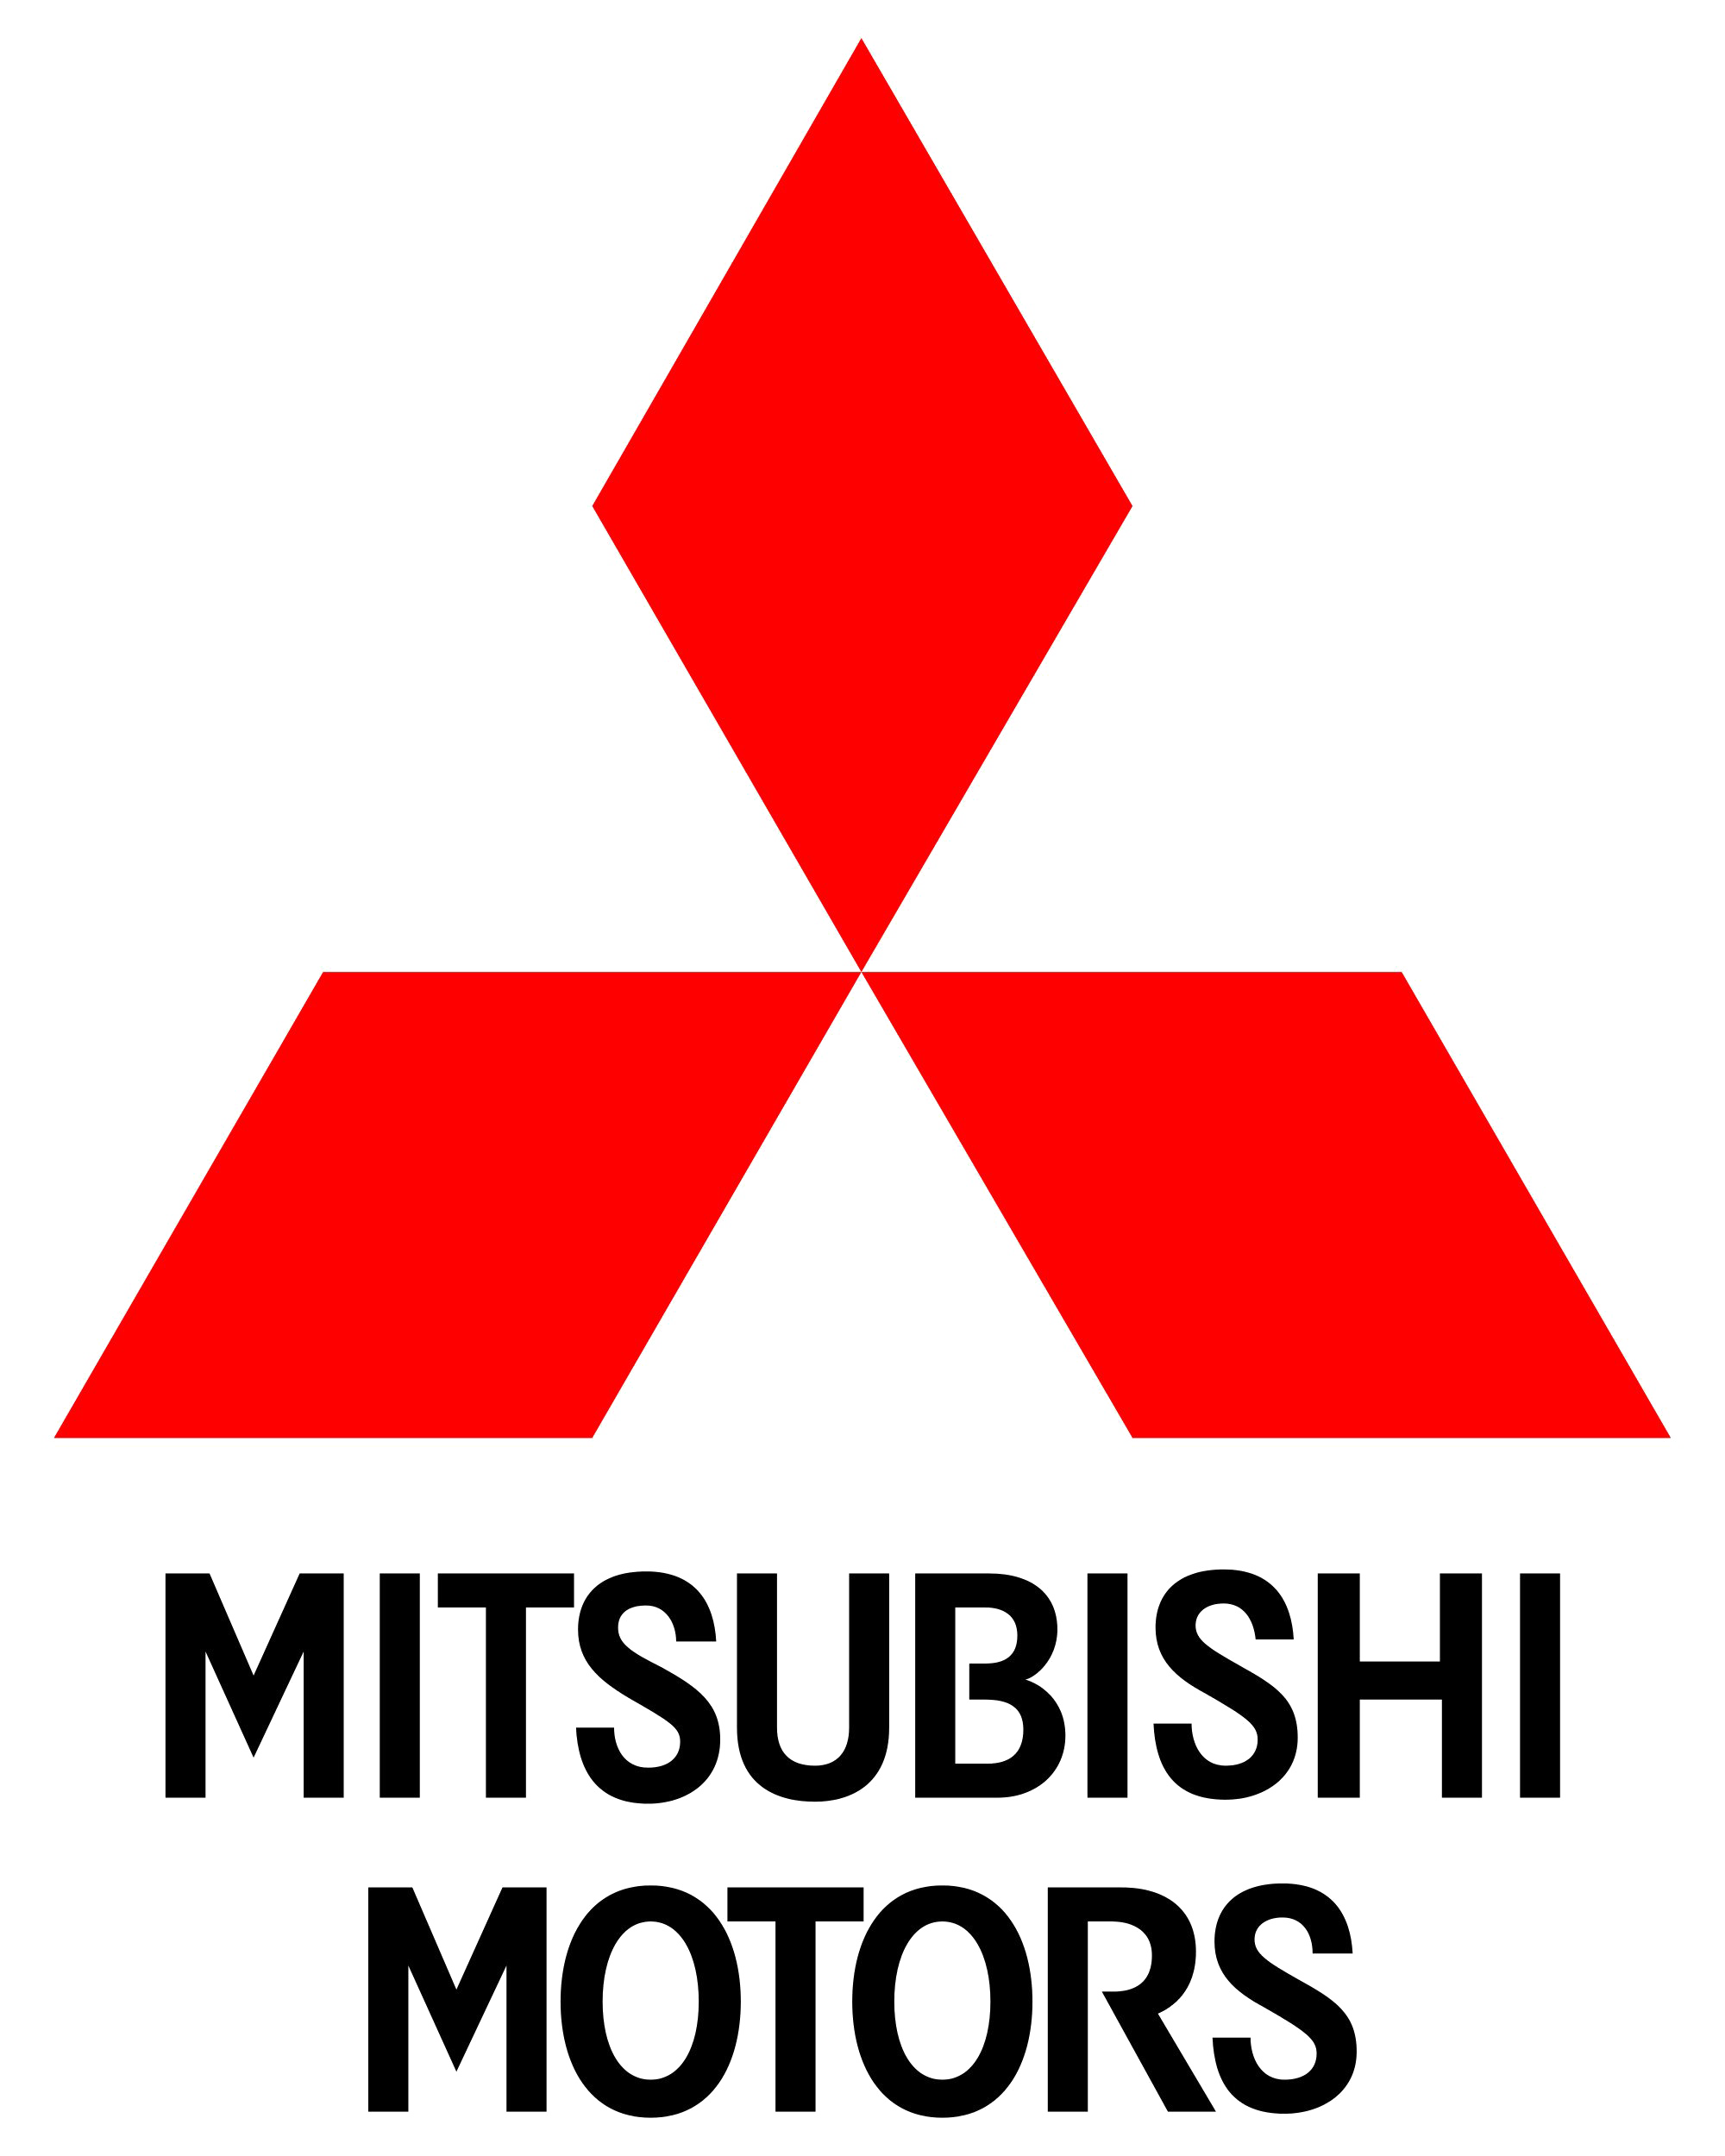 Mitsubishi logo PNG image image